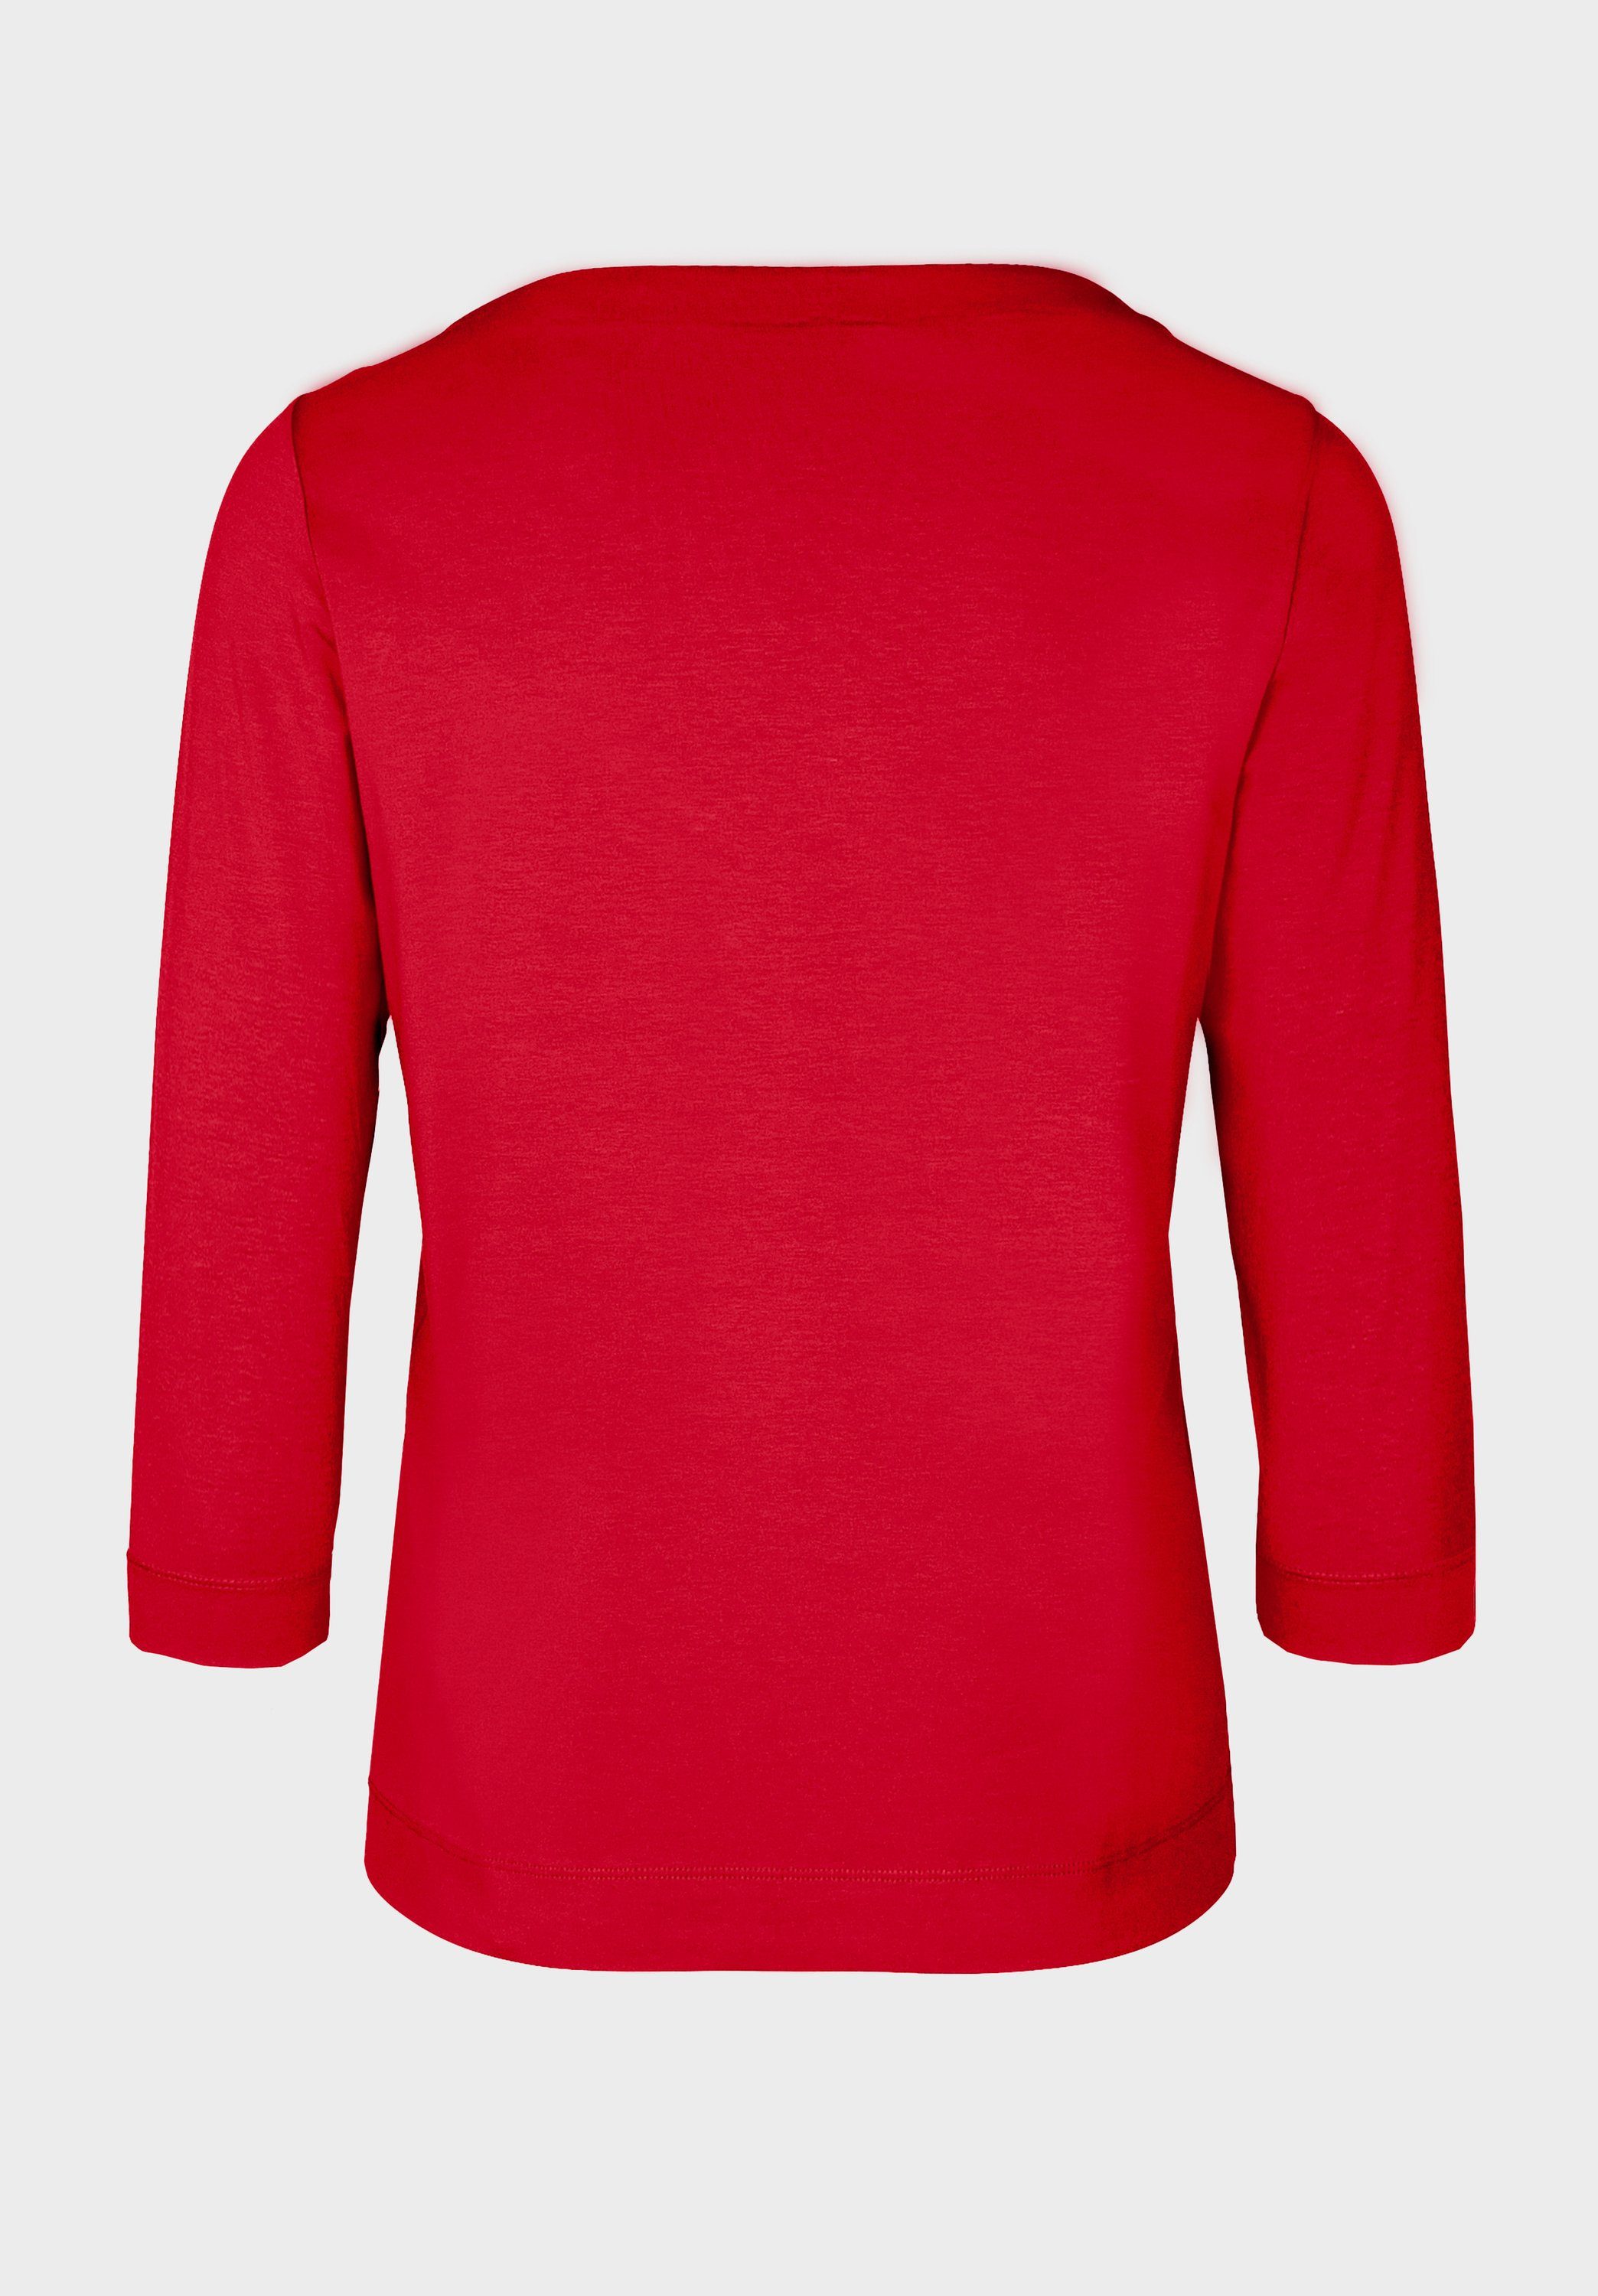 bianca Look DIELLA red modernem angesagten 3/4-Arm-Shirt in Trendfarben pepper und